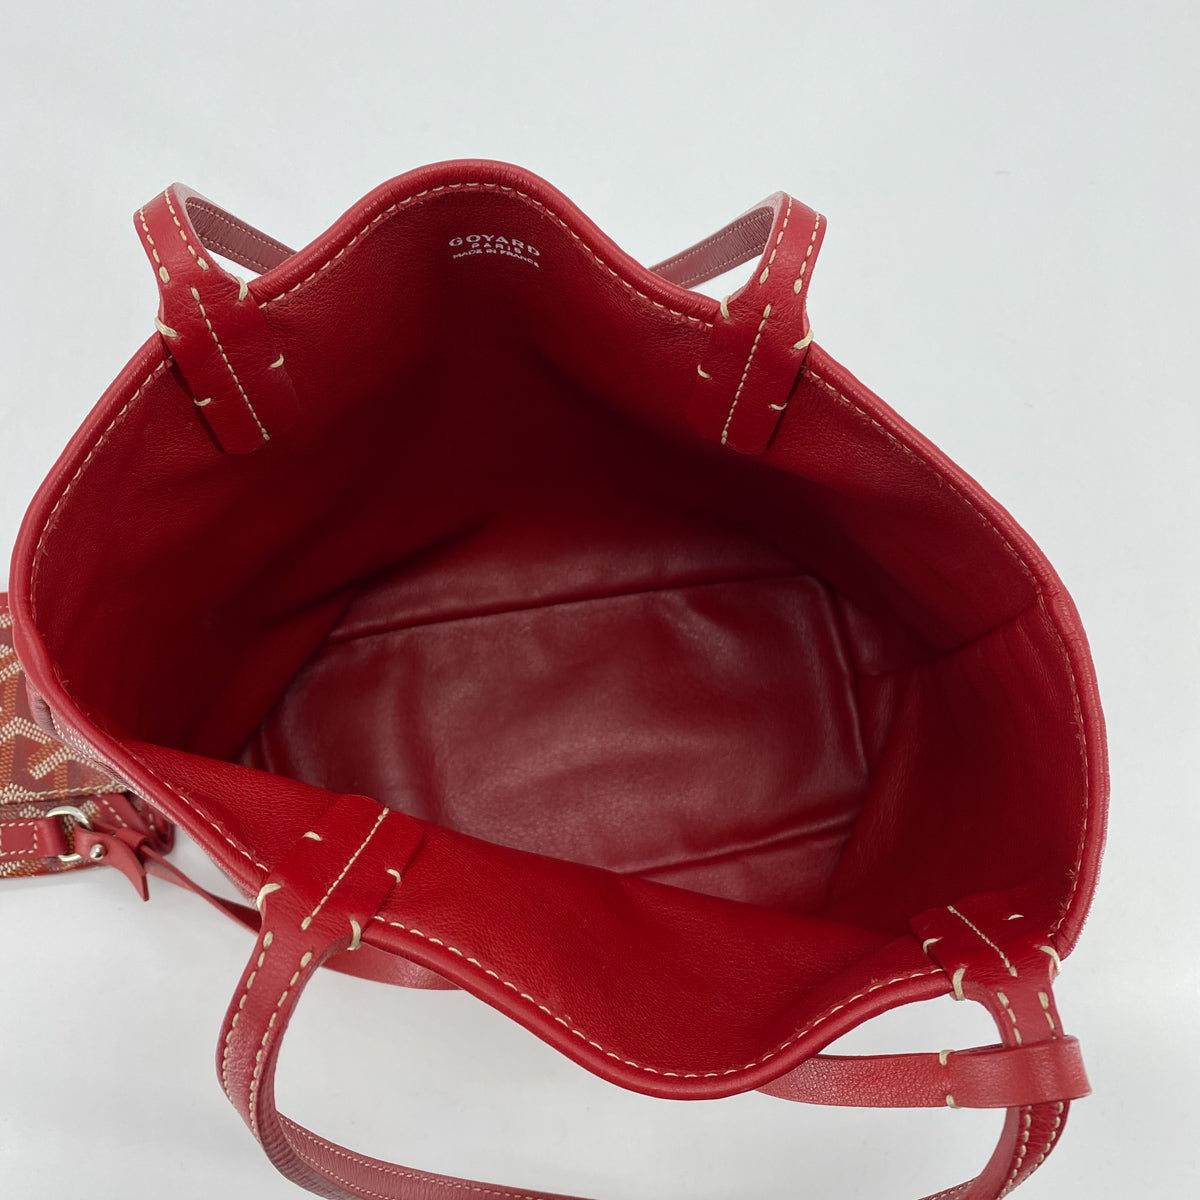 bagfetishperson: Inside my bag: Goyard Hardy PM Red